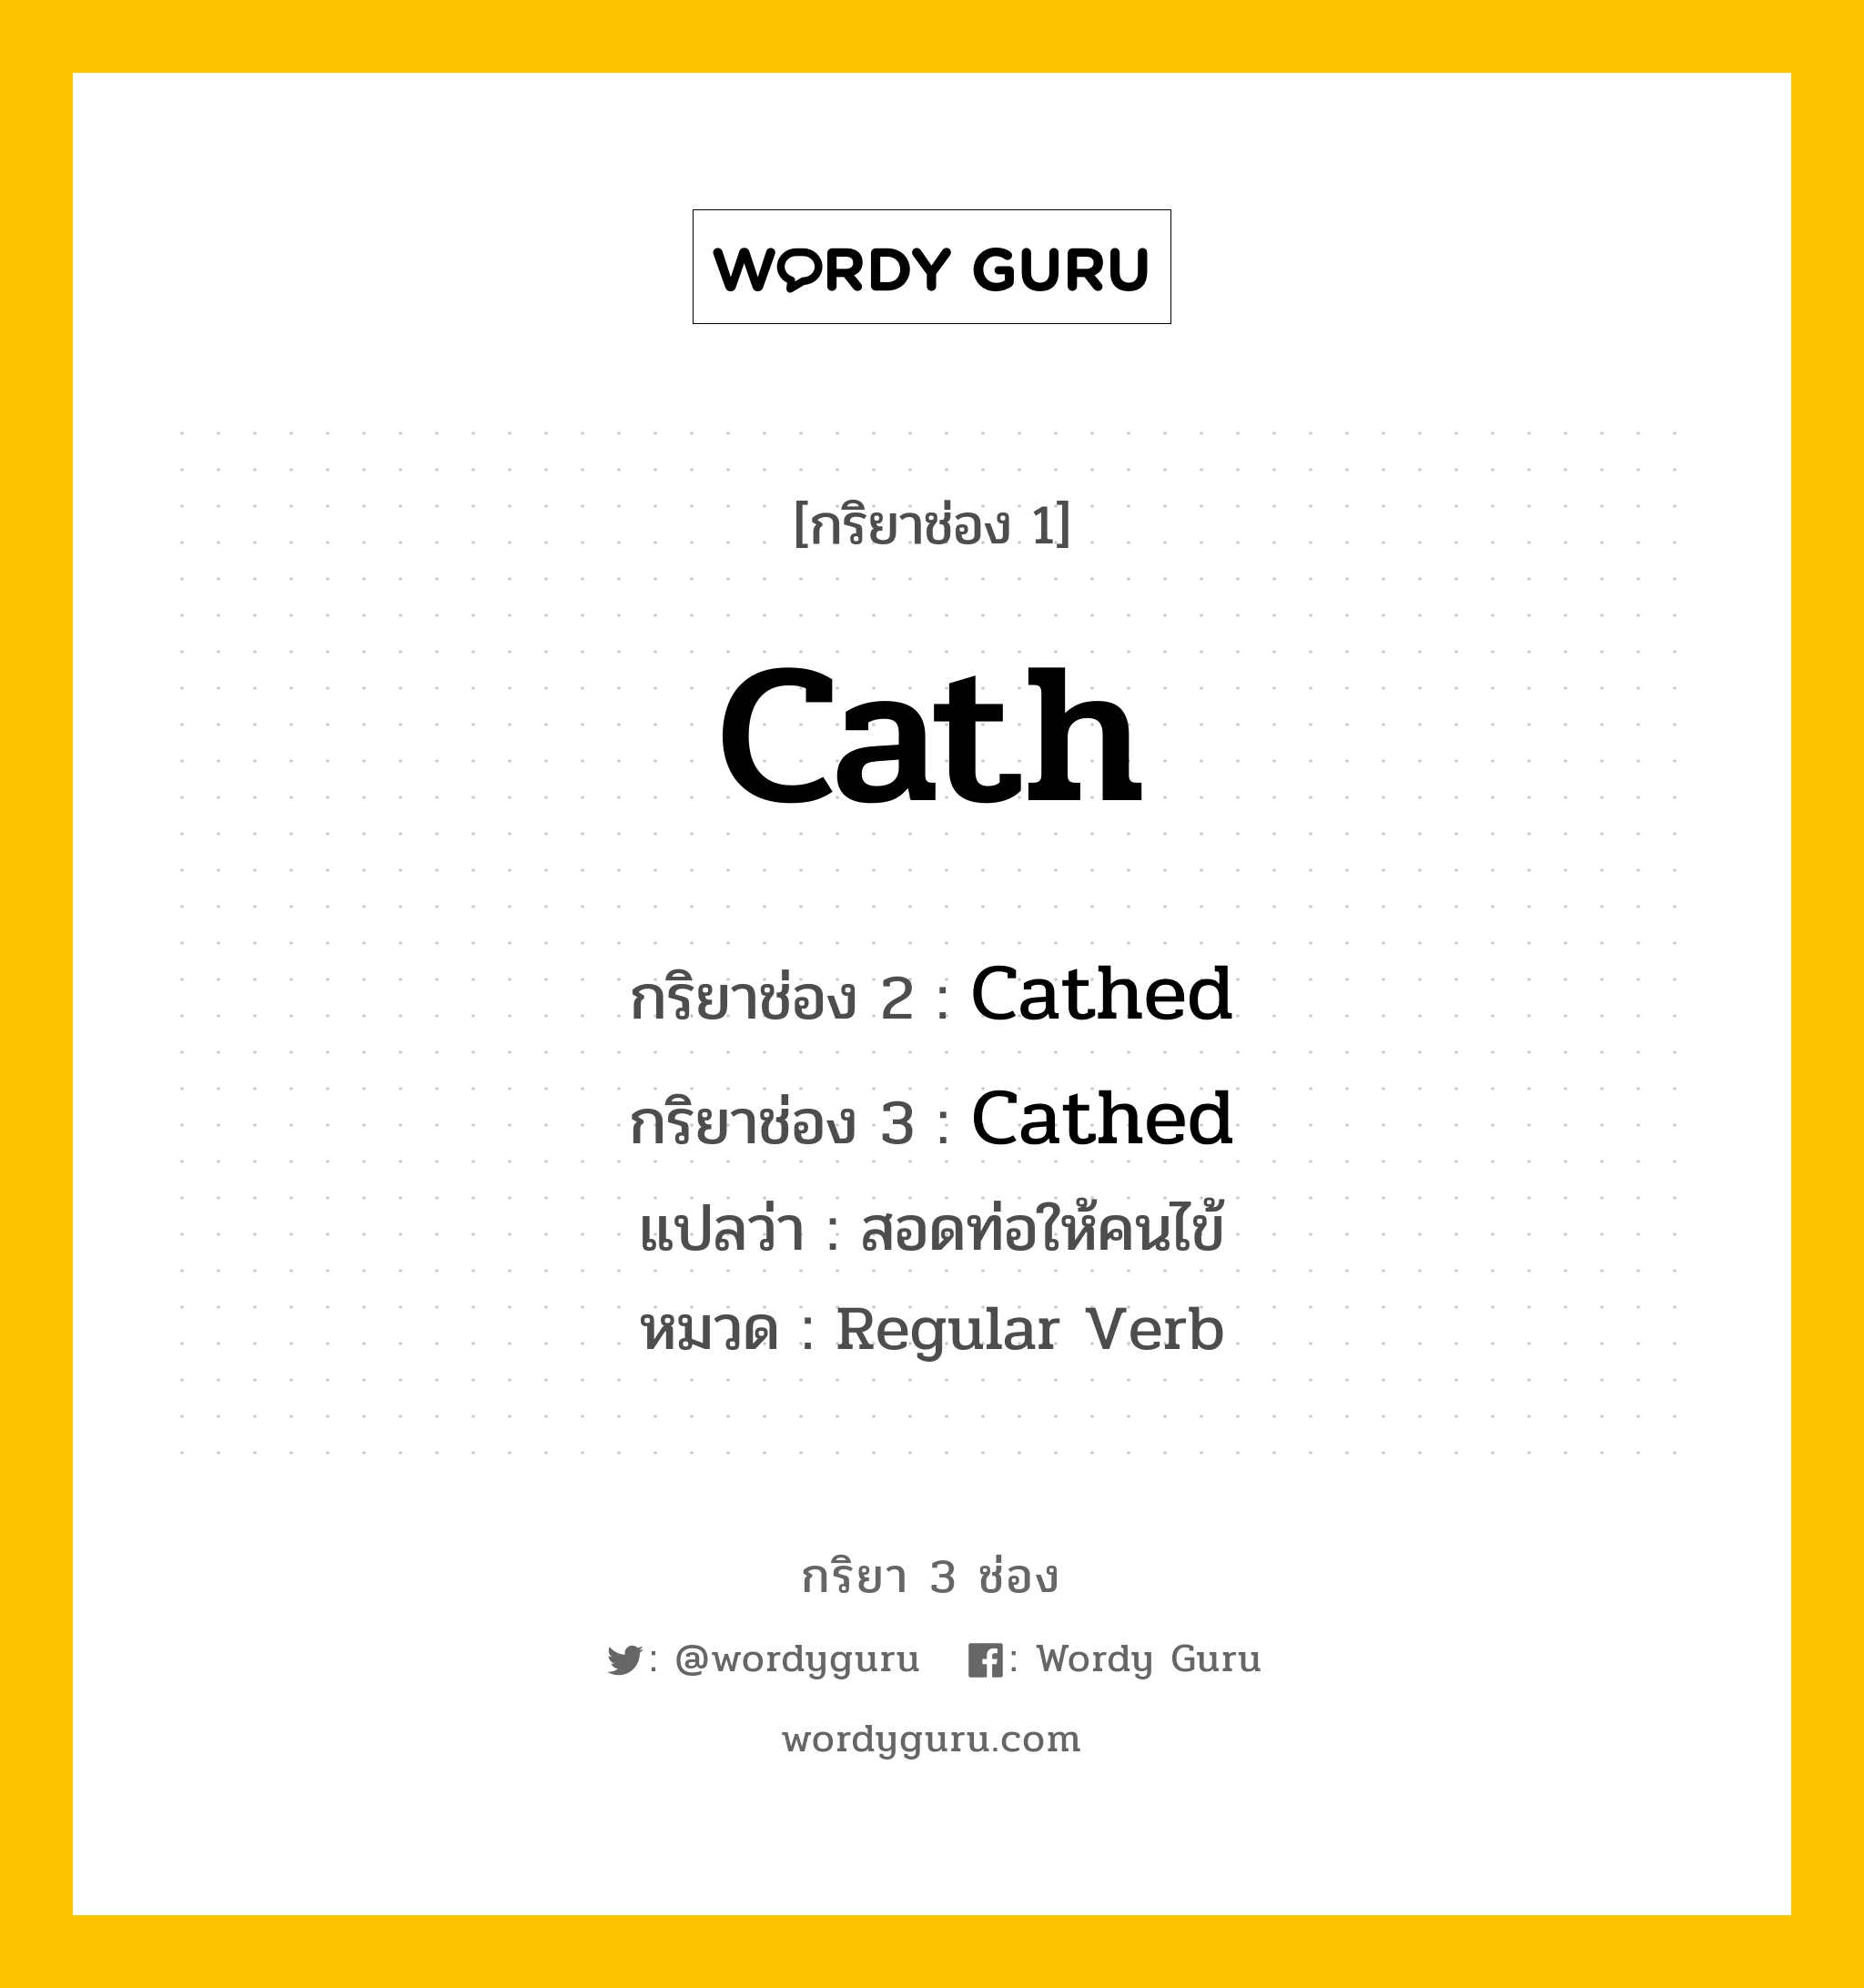 กริยา 3 ช่อง: Cath ช่อง 2 Cath ช่อง 3 คืออะไร, กริยาช่อง 1 Cath กริยาช่อง 2 Cathed กริยาช่อง 3 Cathed แปลว่า สอดท่อให้คนไข้ หมวด Regular Verb หมวด Regular Verb